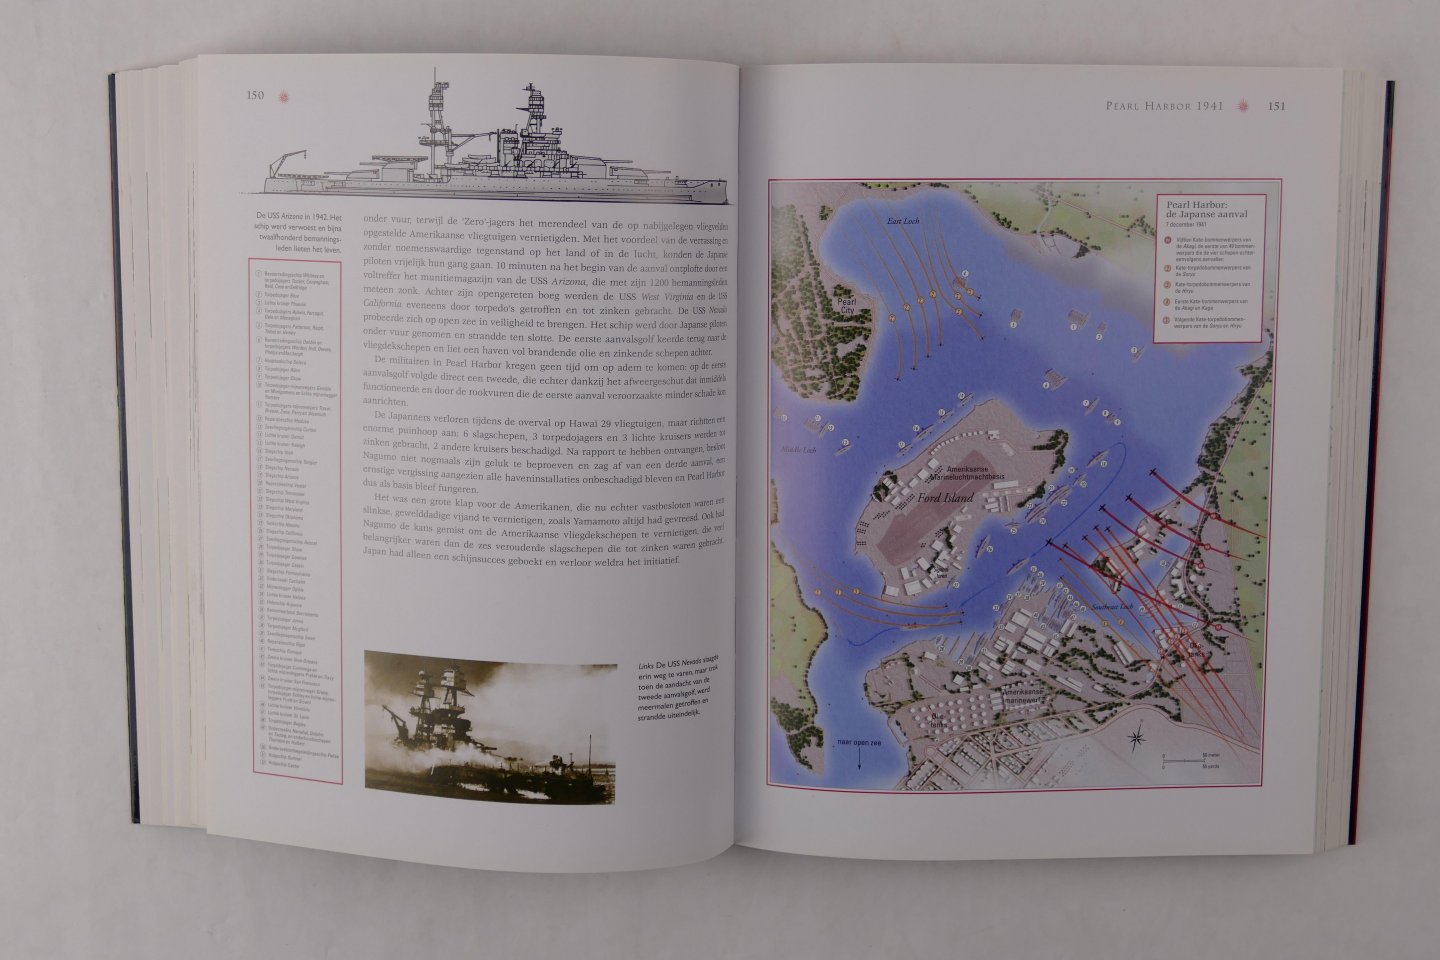 Swanston, Alexander & Swanston, Malcolm - Atlas van de Tweede wereldoorlog. De belangrijkste veldslagen en operaties in kaar gebracht (3 foto's)